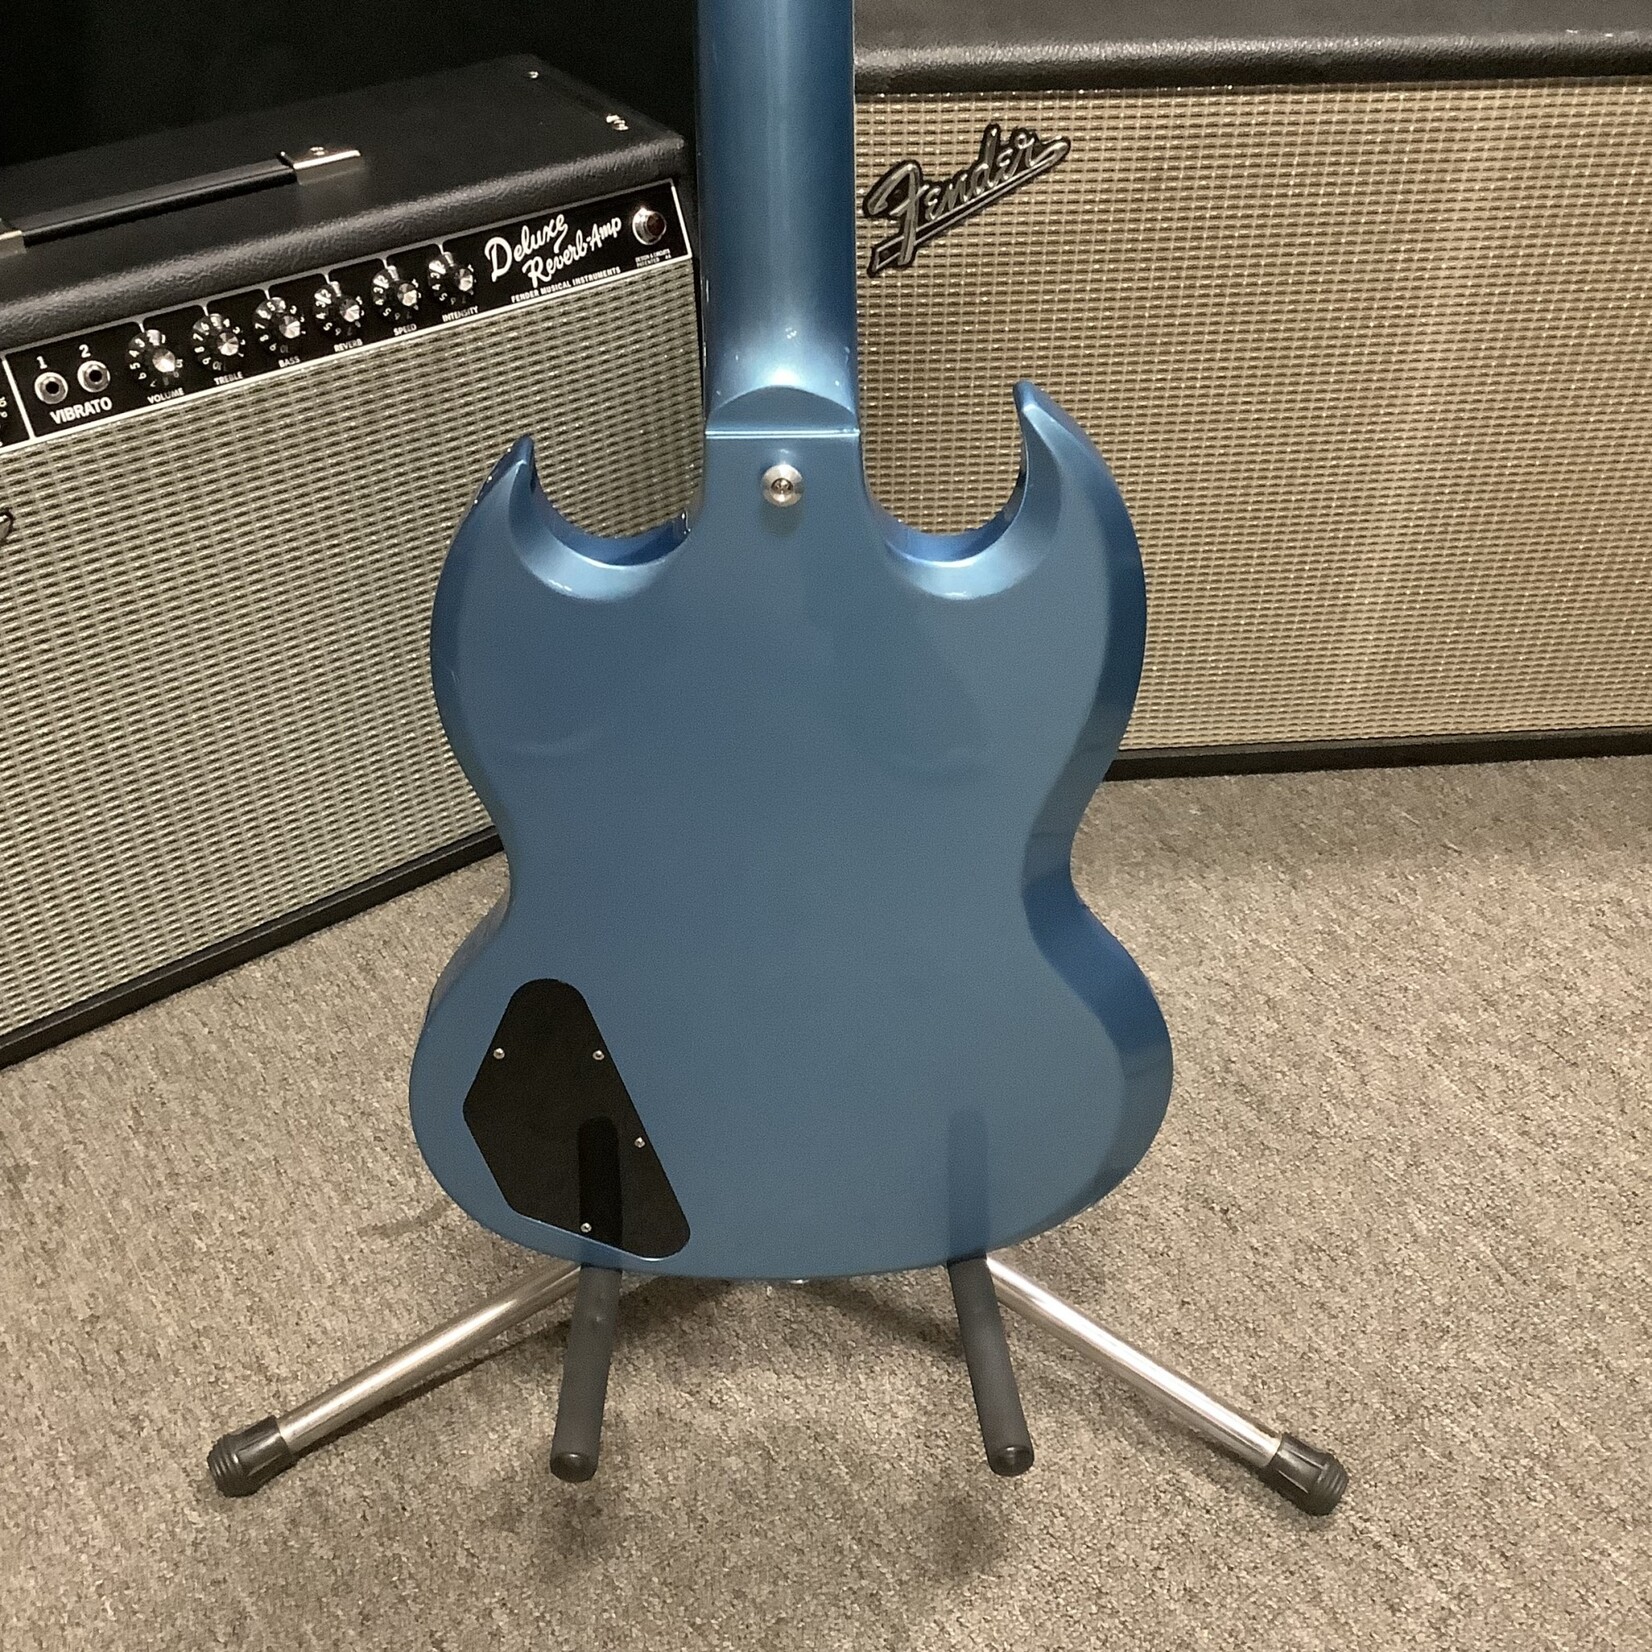 Gibson 2018 Gibson SG Standard Pelham Blue